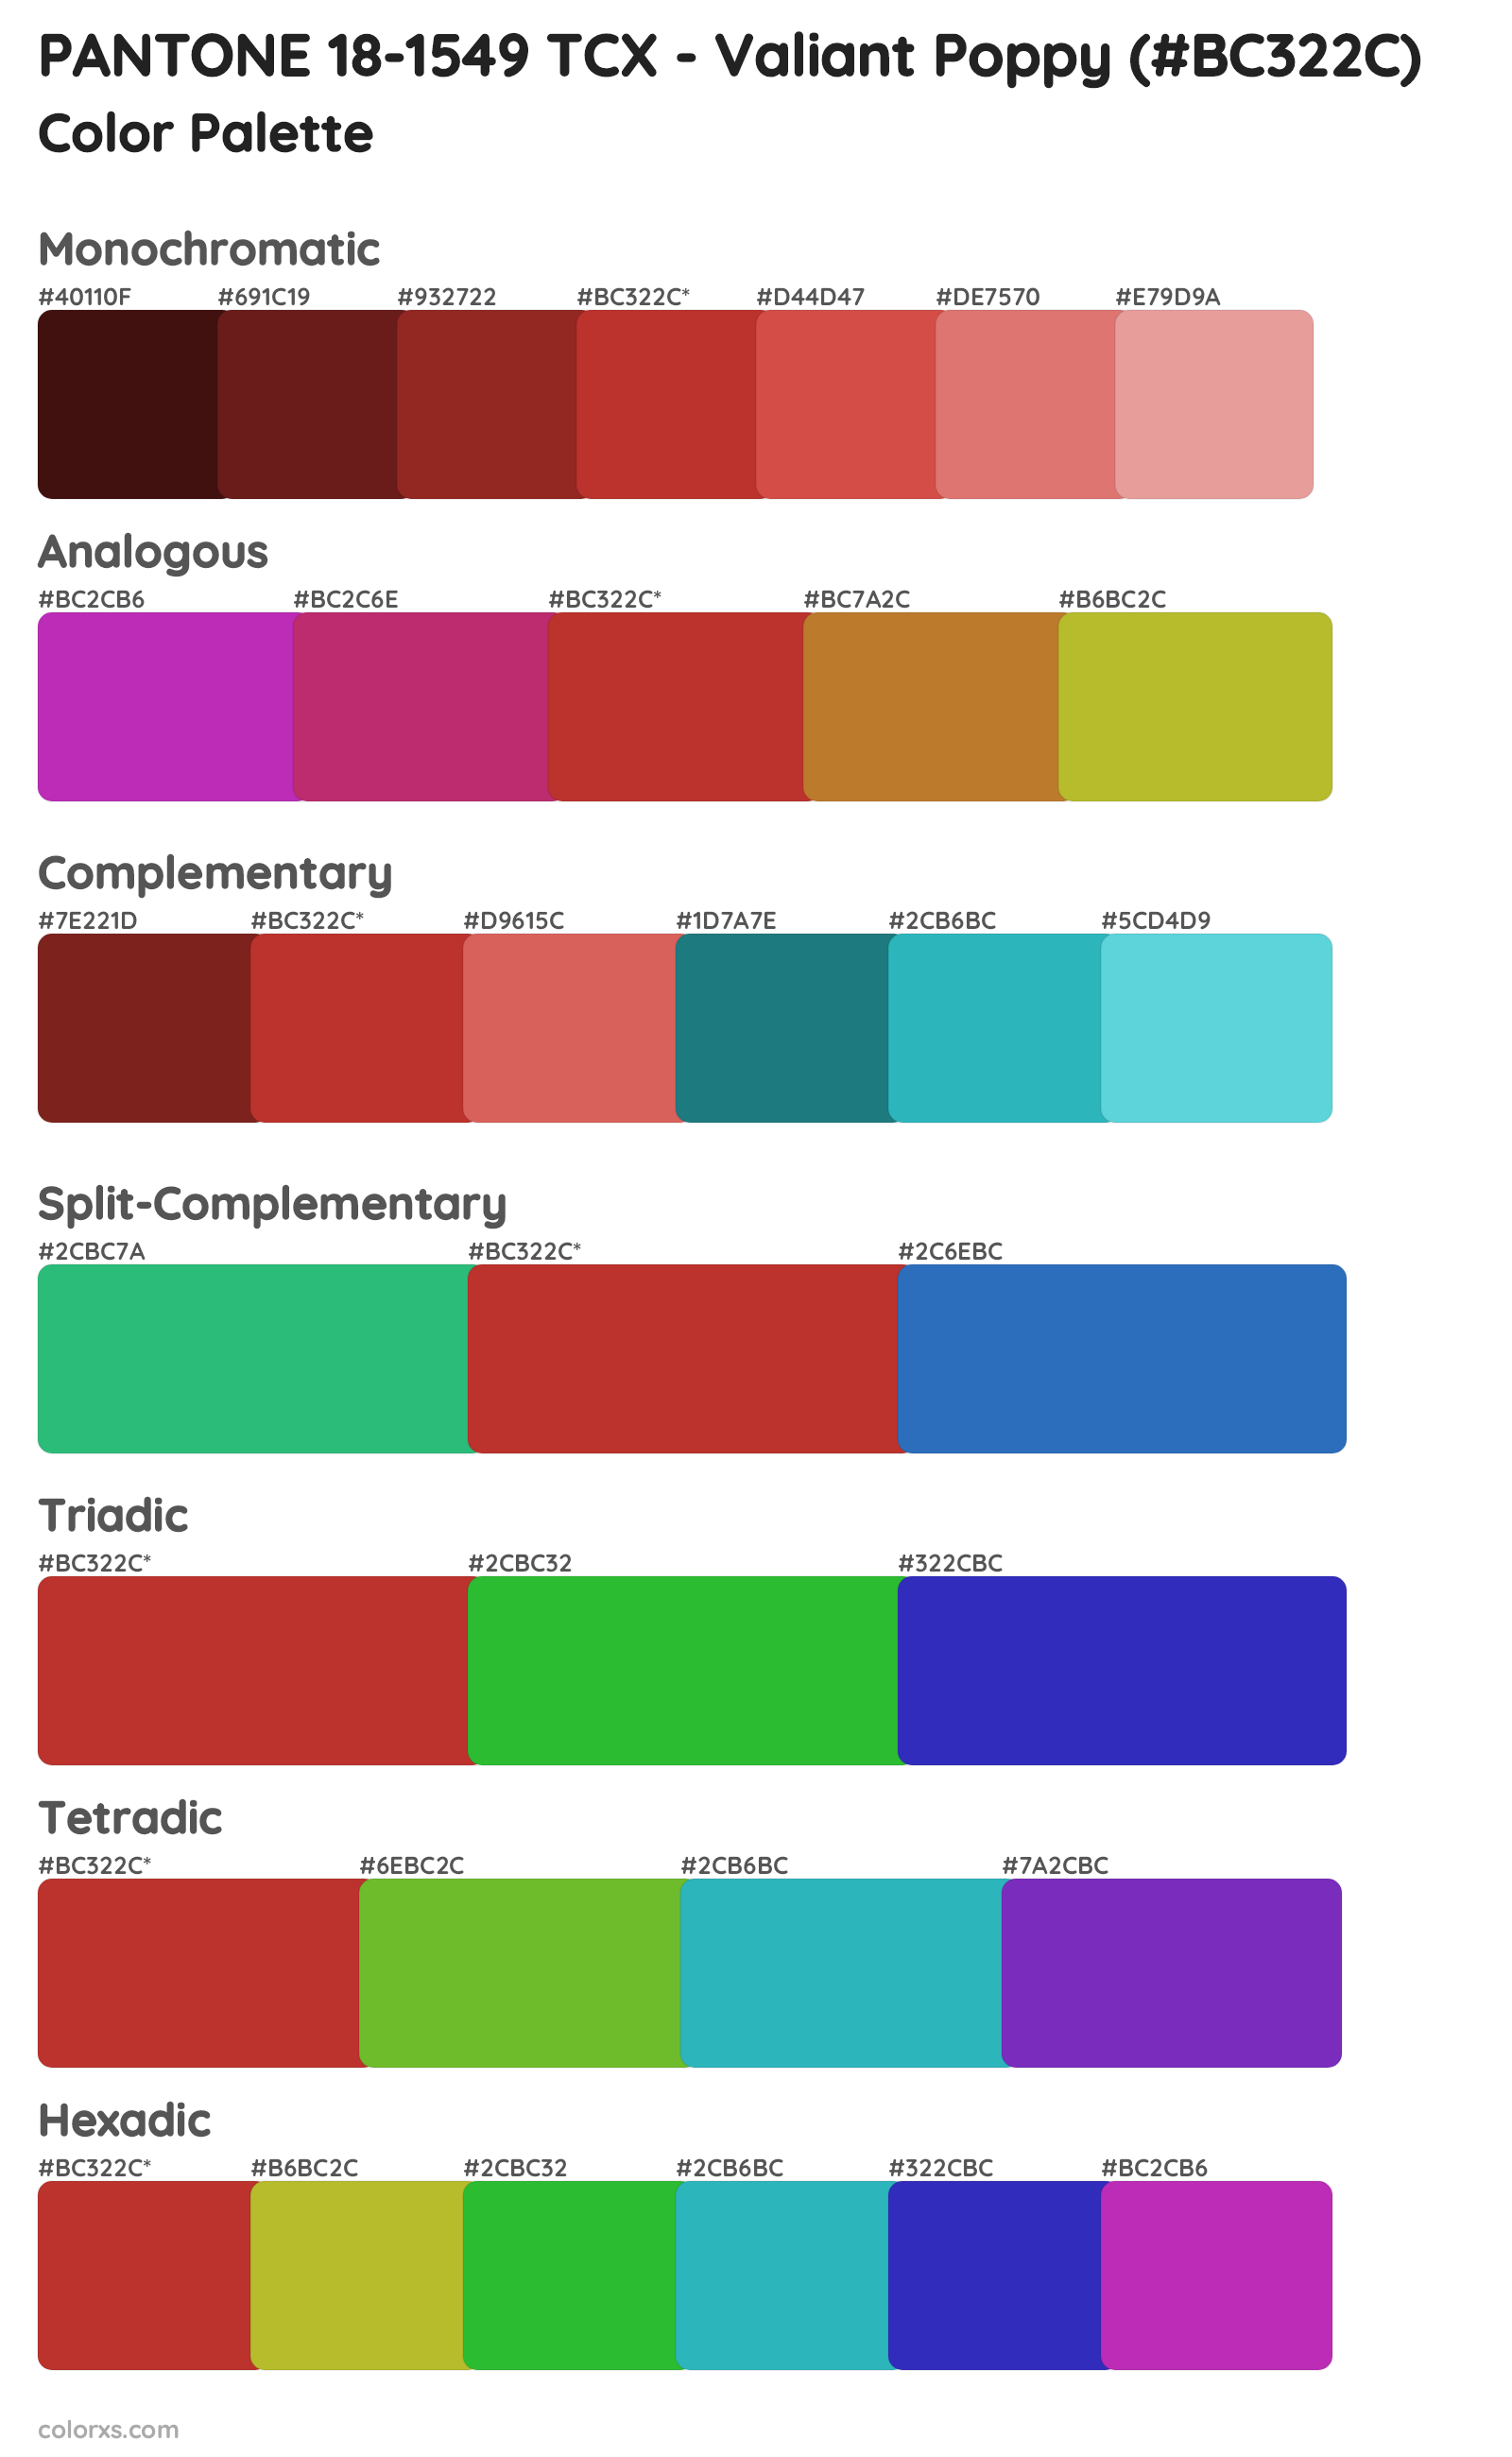 PANTONE 18-1549 TCX - Valiant Poppy Color Scheme Palettes